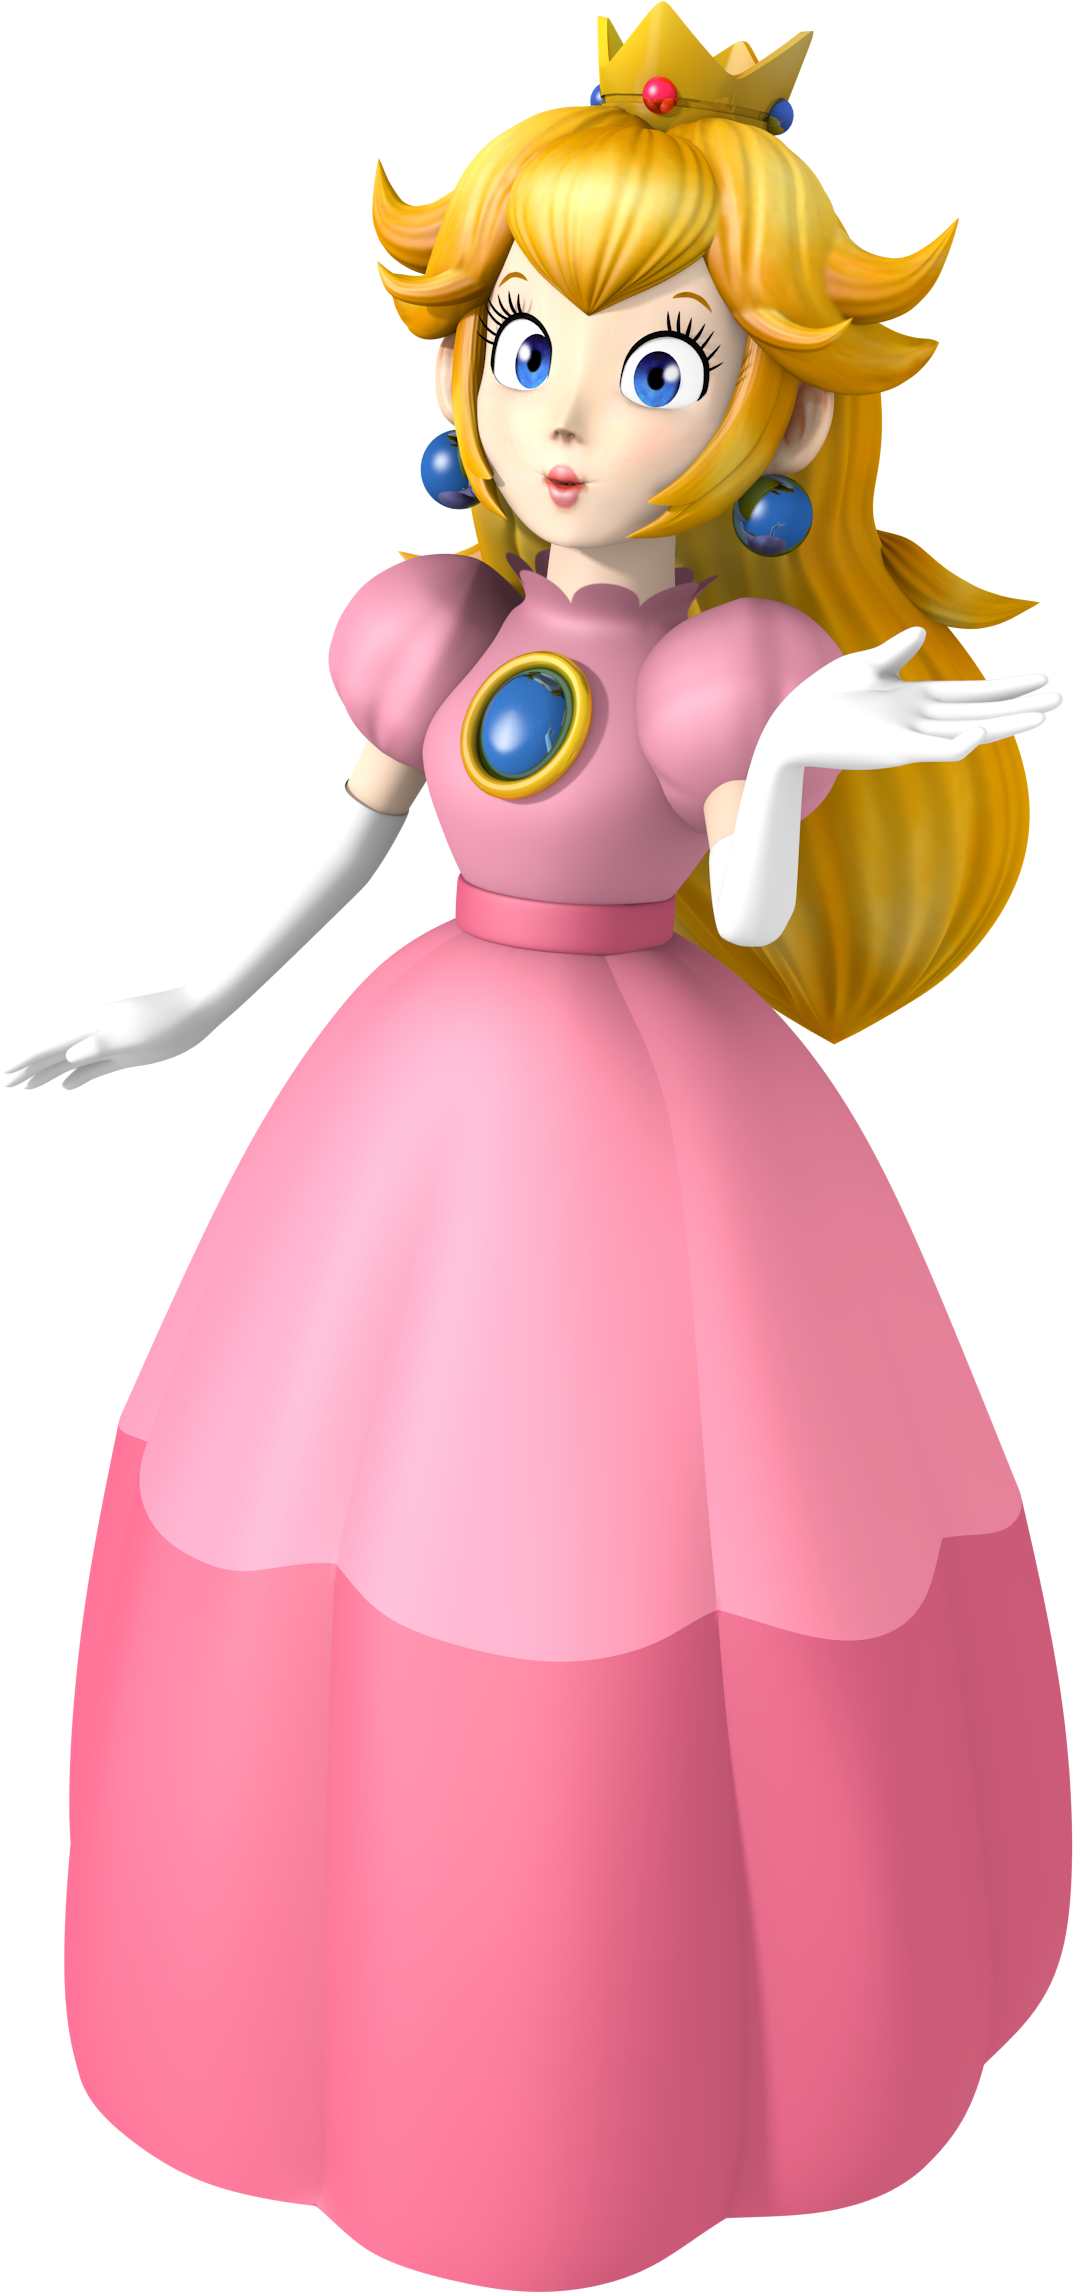 Princess Peach - Mario Party 3 Peach (1100x2320)